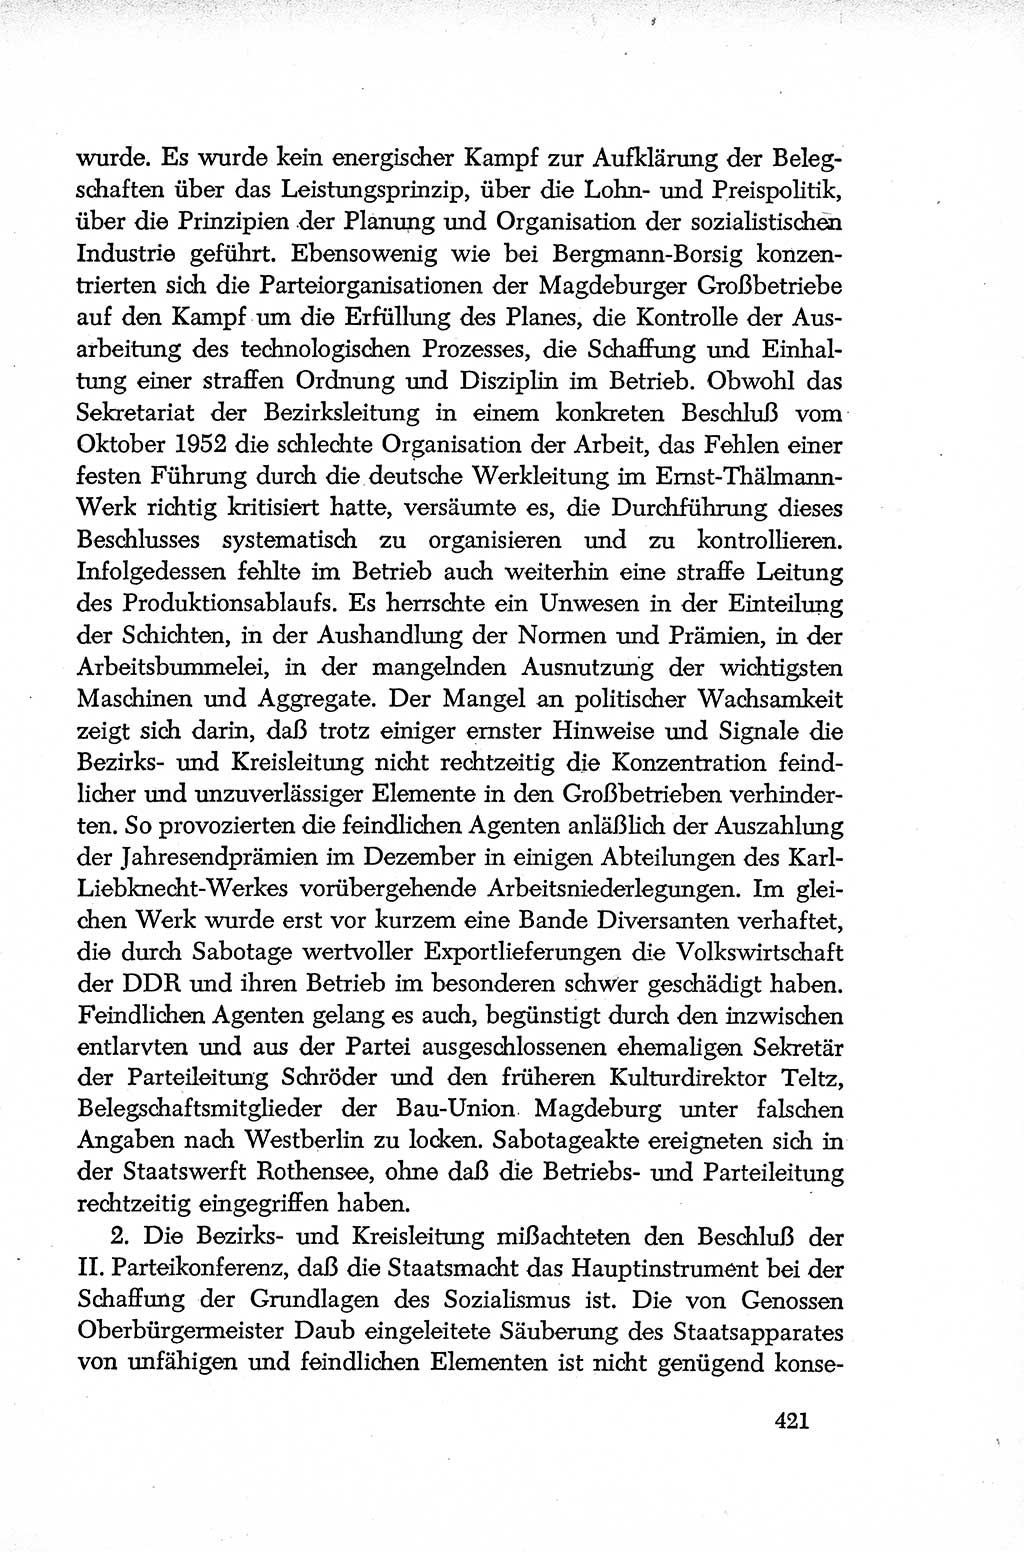 Dokumente der Sozialistischen Einheitspartei Deutschlands (SED) [Deutsche Demokratische Republik (DDR)] 1952-1953, Seite 421 (Dok. SED DDR 1952-1953, S. 421)